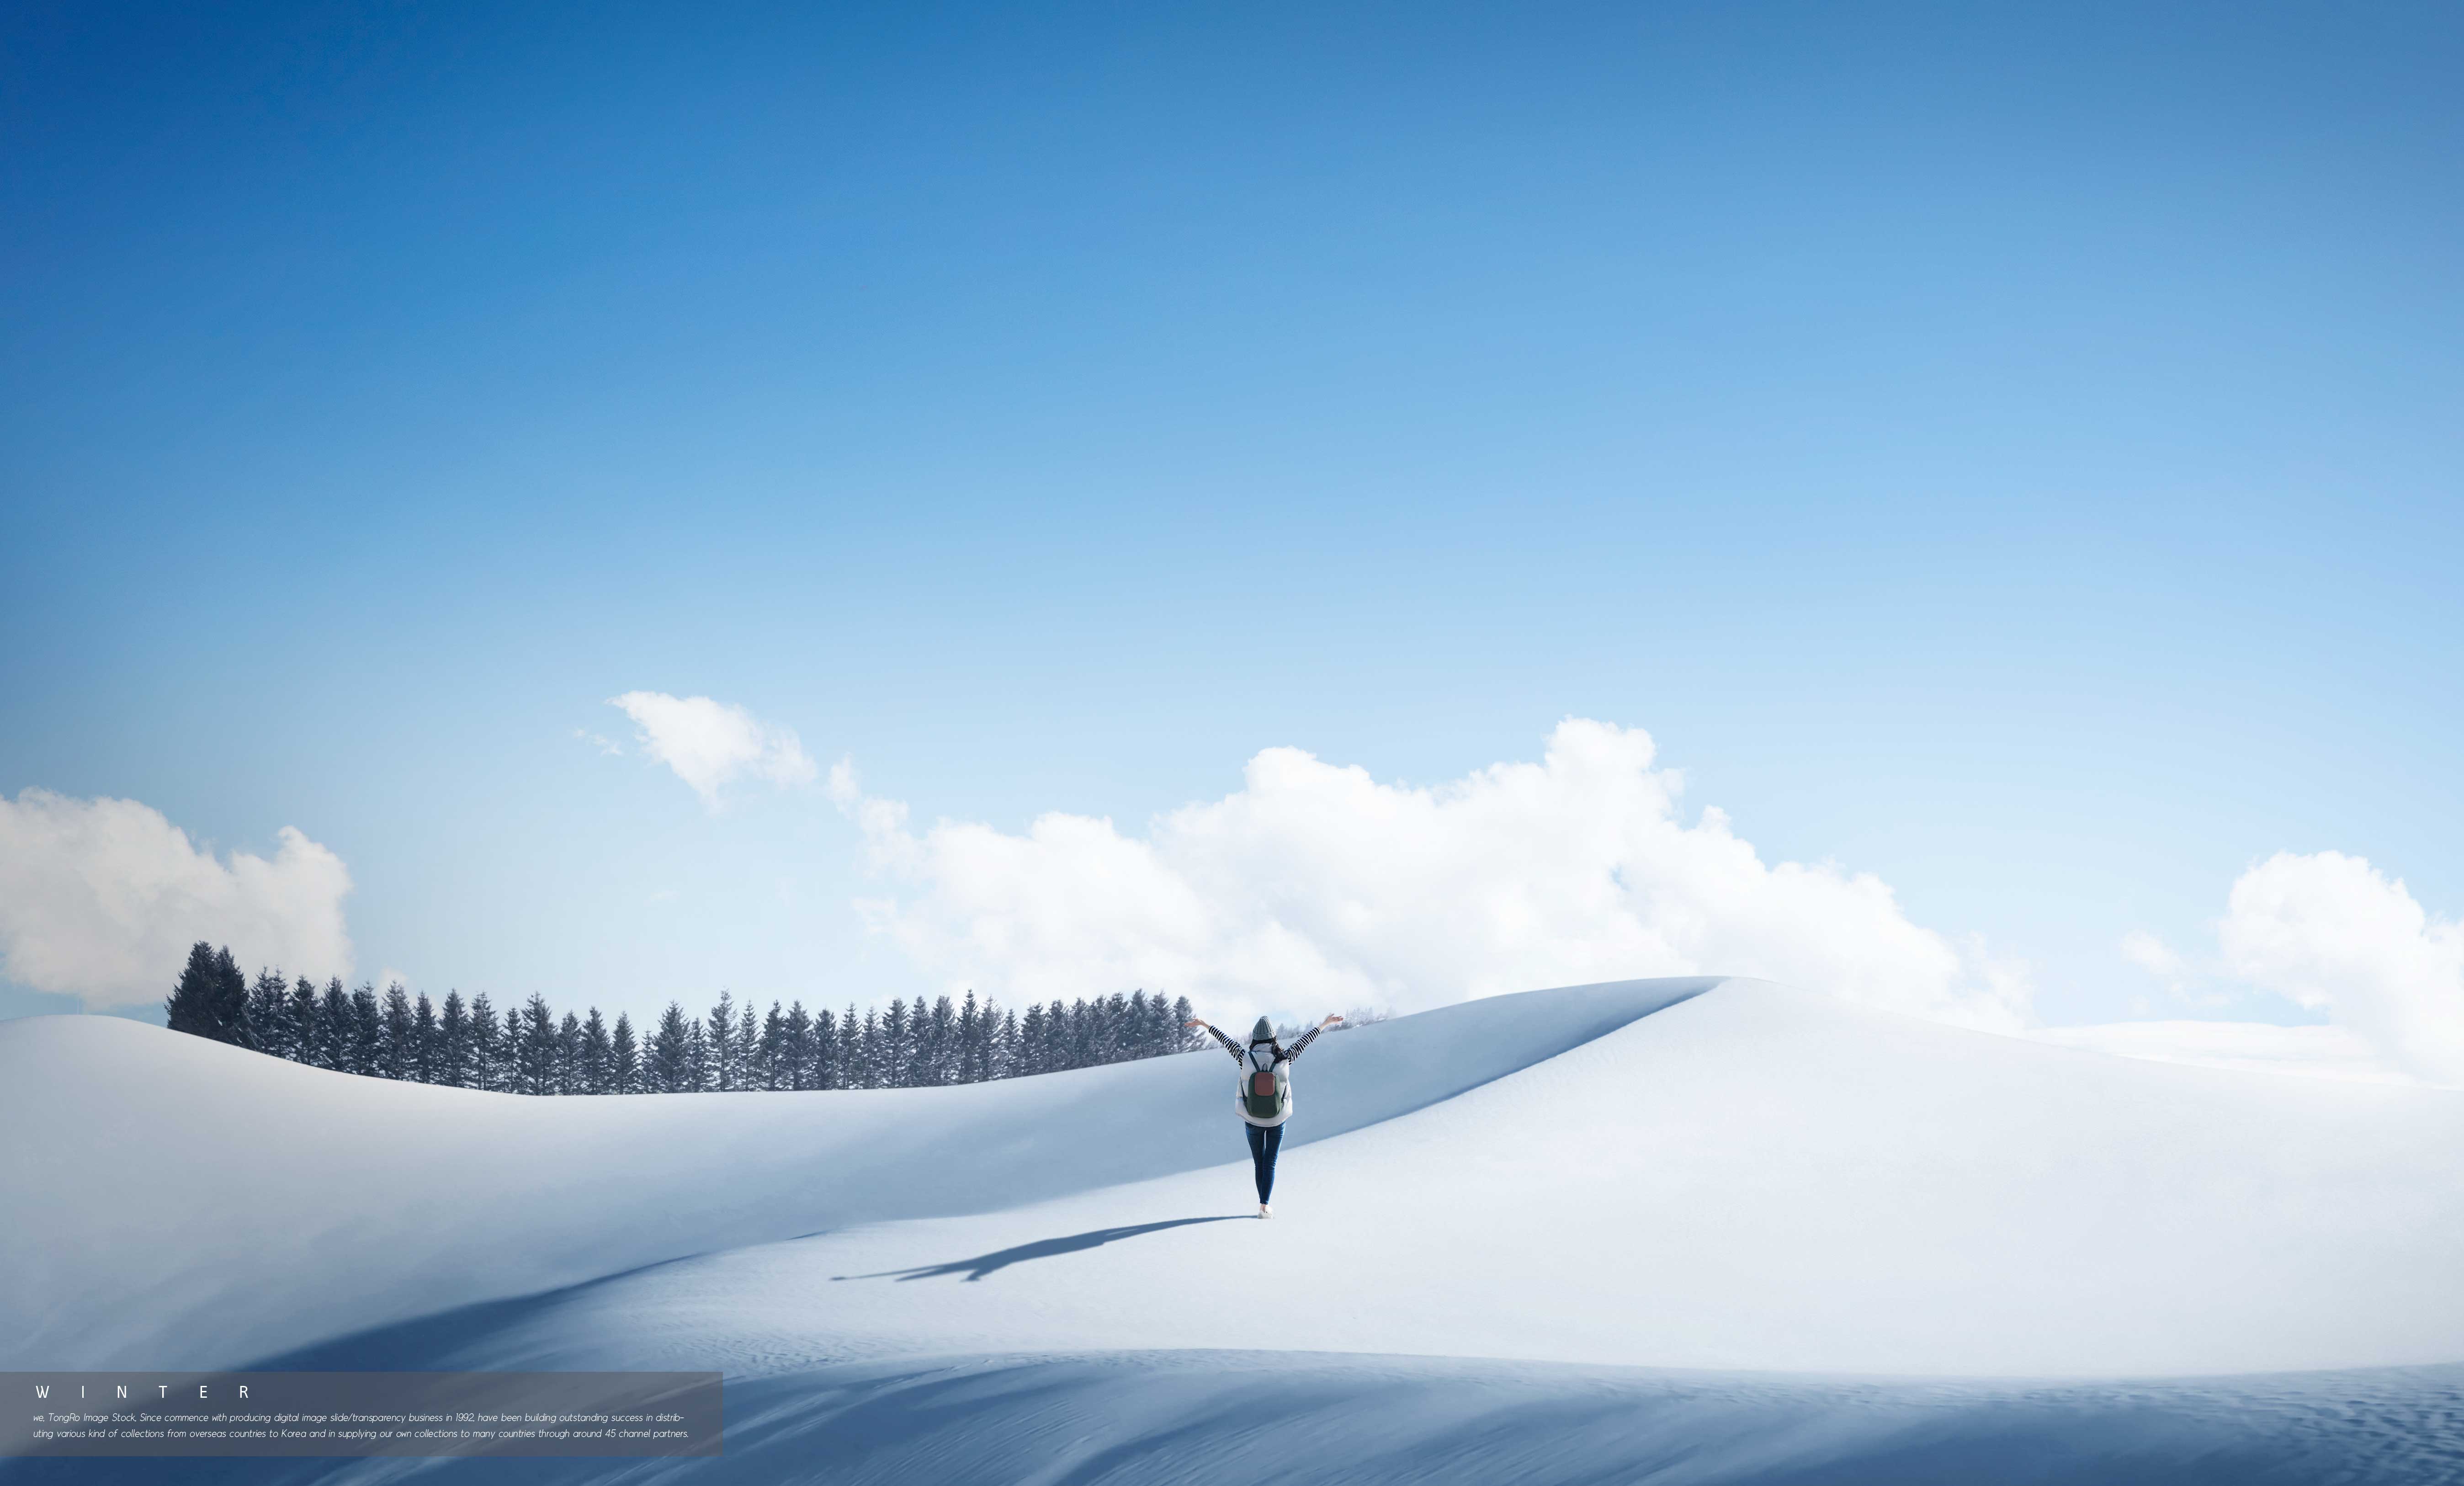 雪山旅行冬季推广背景图psd素材设计素材模板